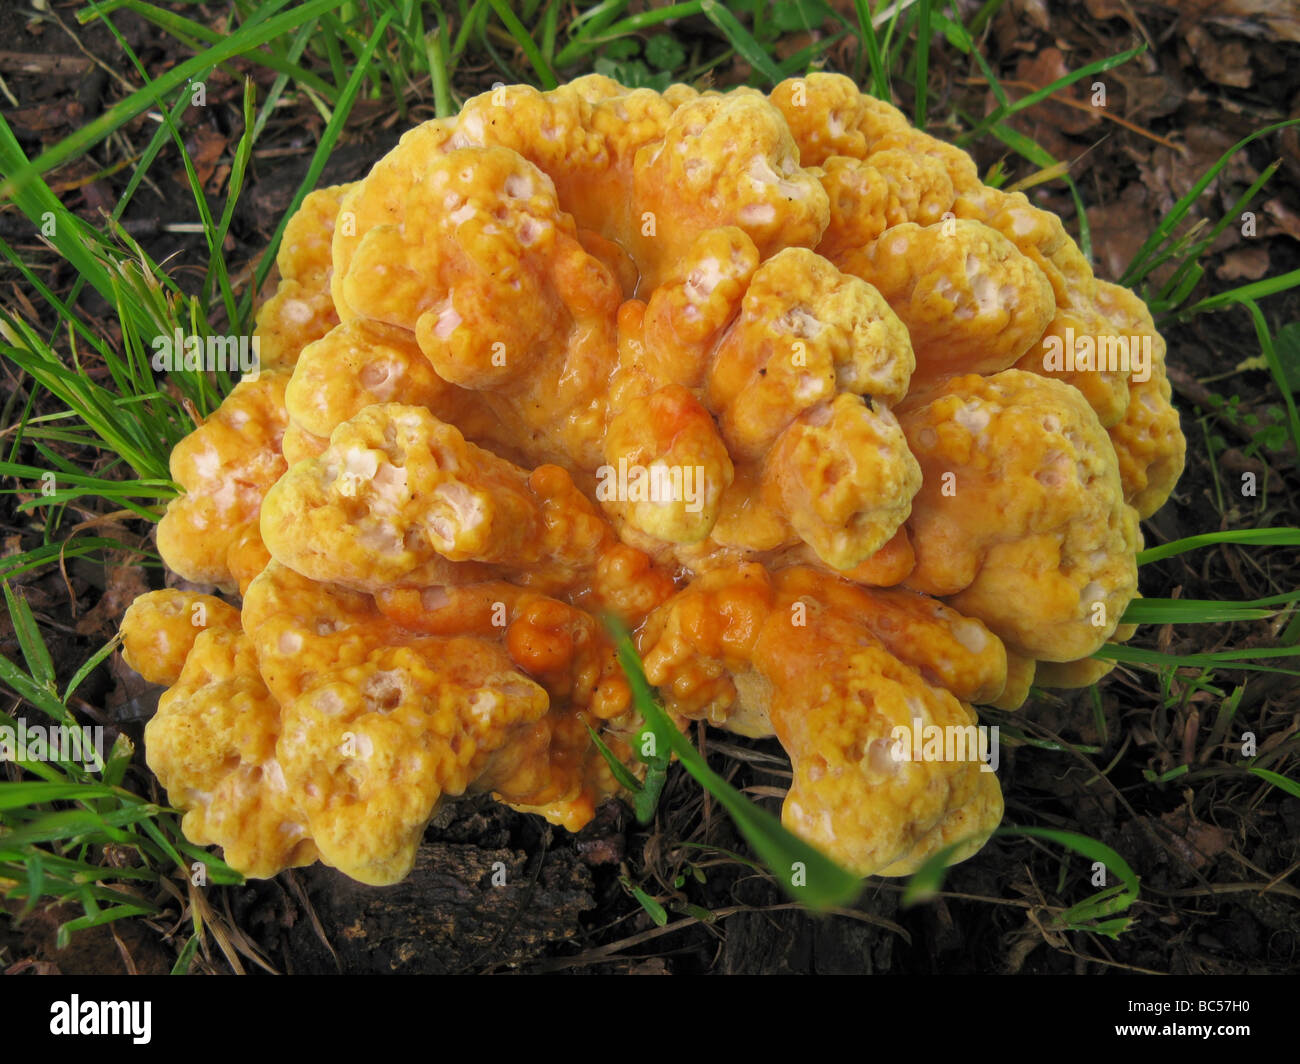 Yellow mushroom Stock Photo